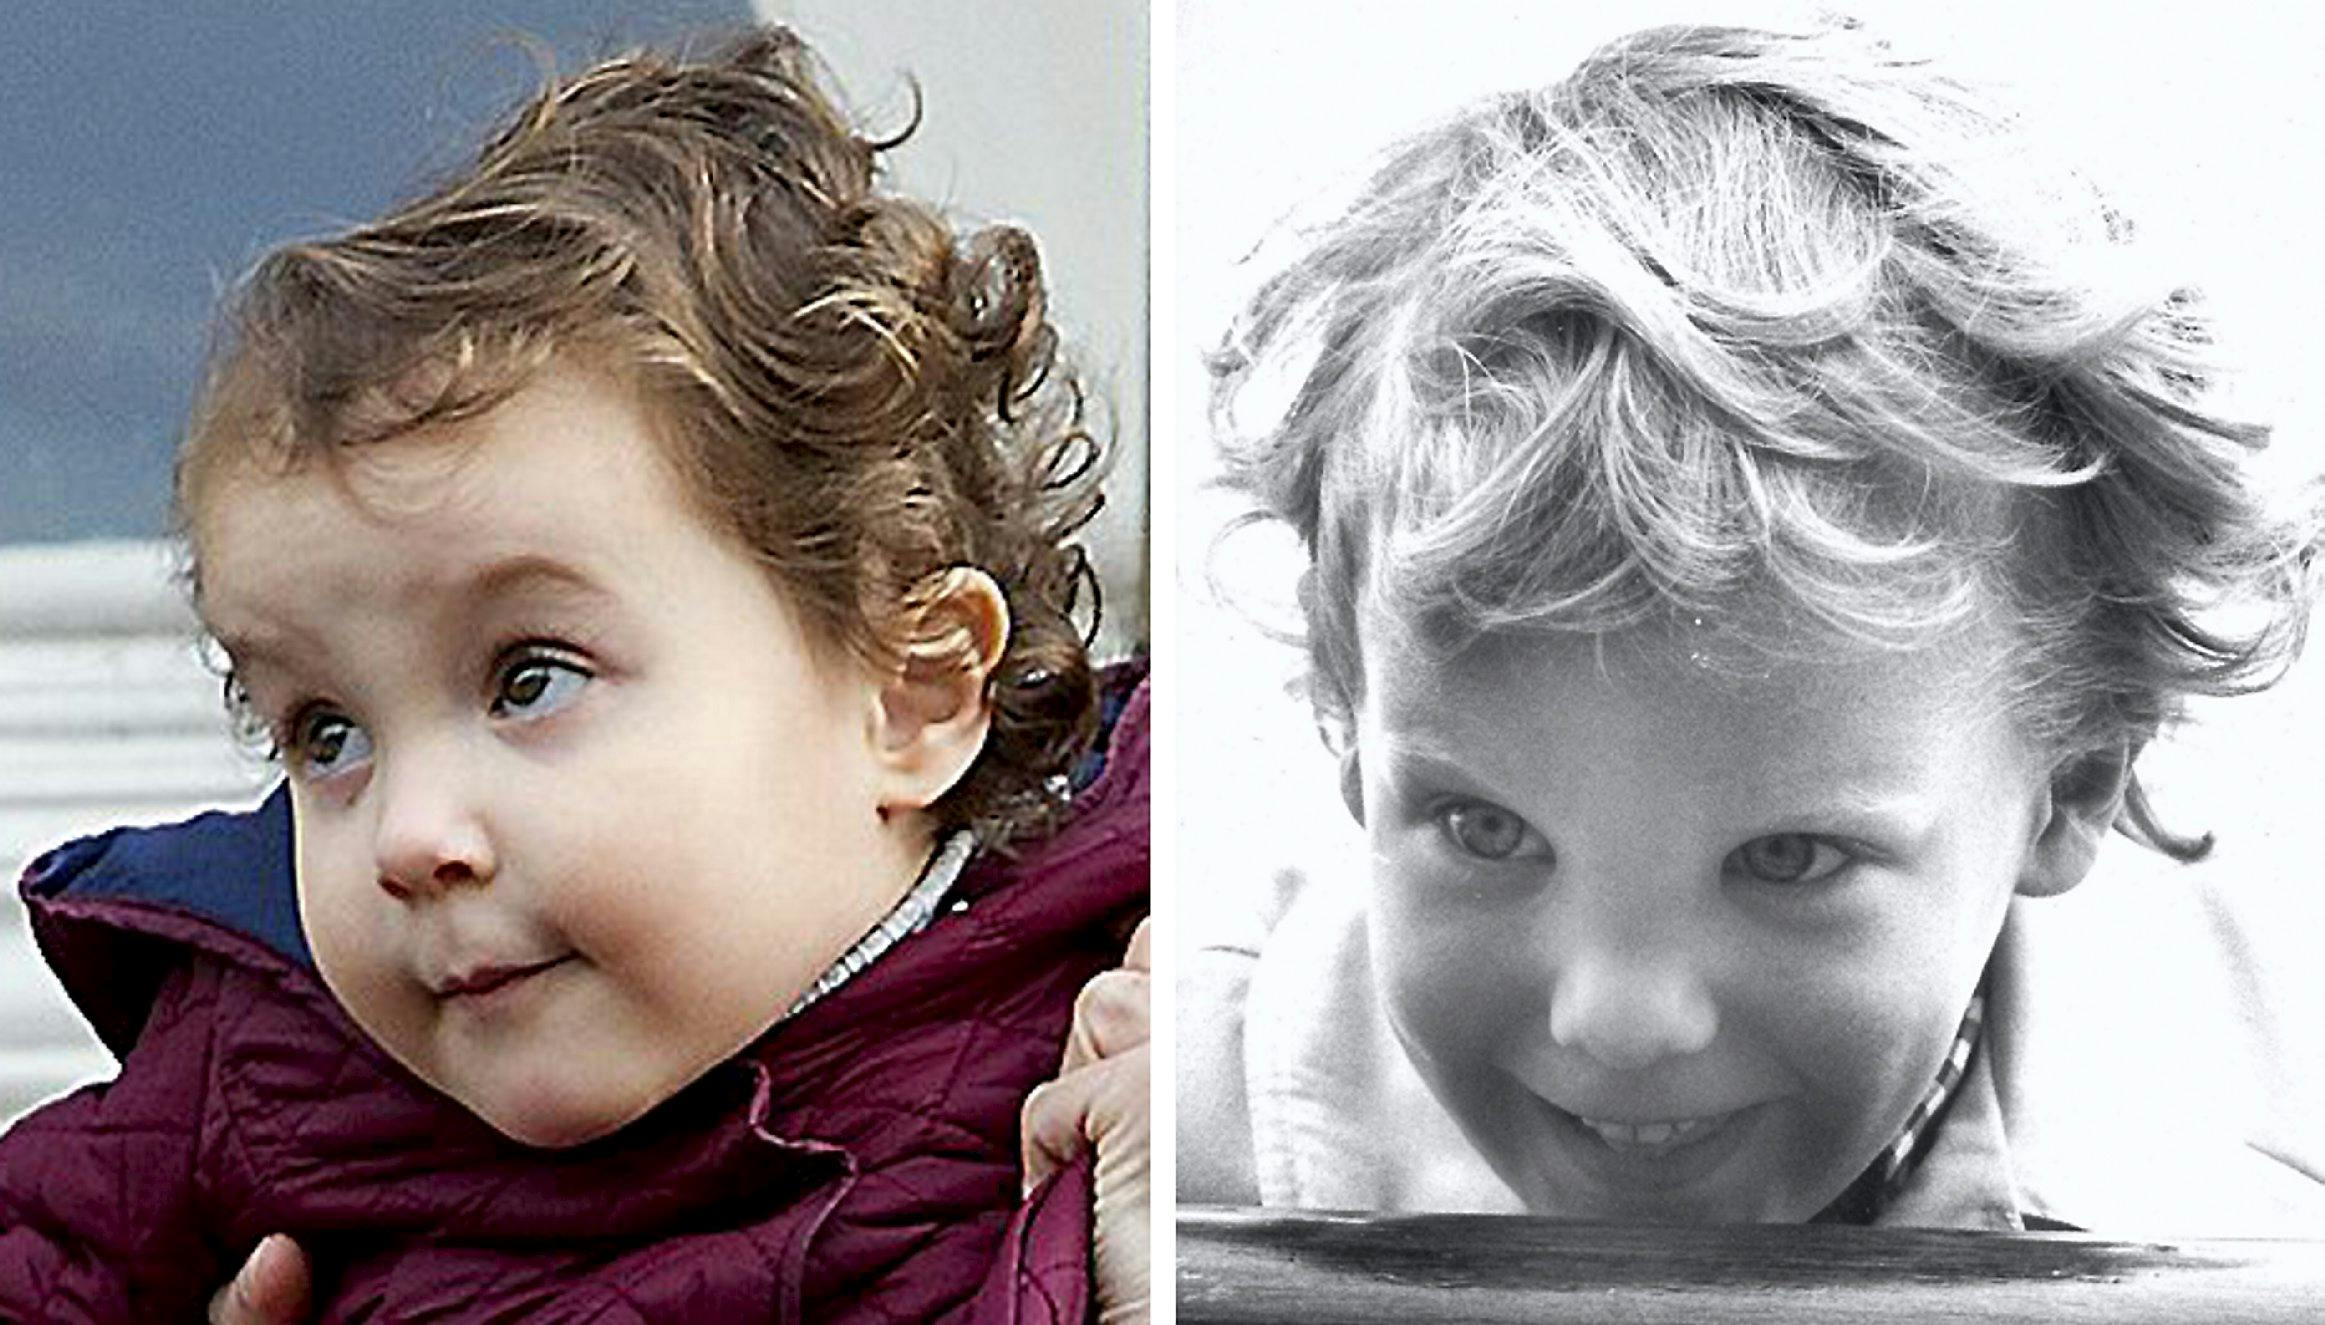  Det er ikke svært at se ligheden mellem den 5-årige Prins Joachim og hans nu snart 3-årige datter, Prinsesse Athena